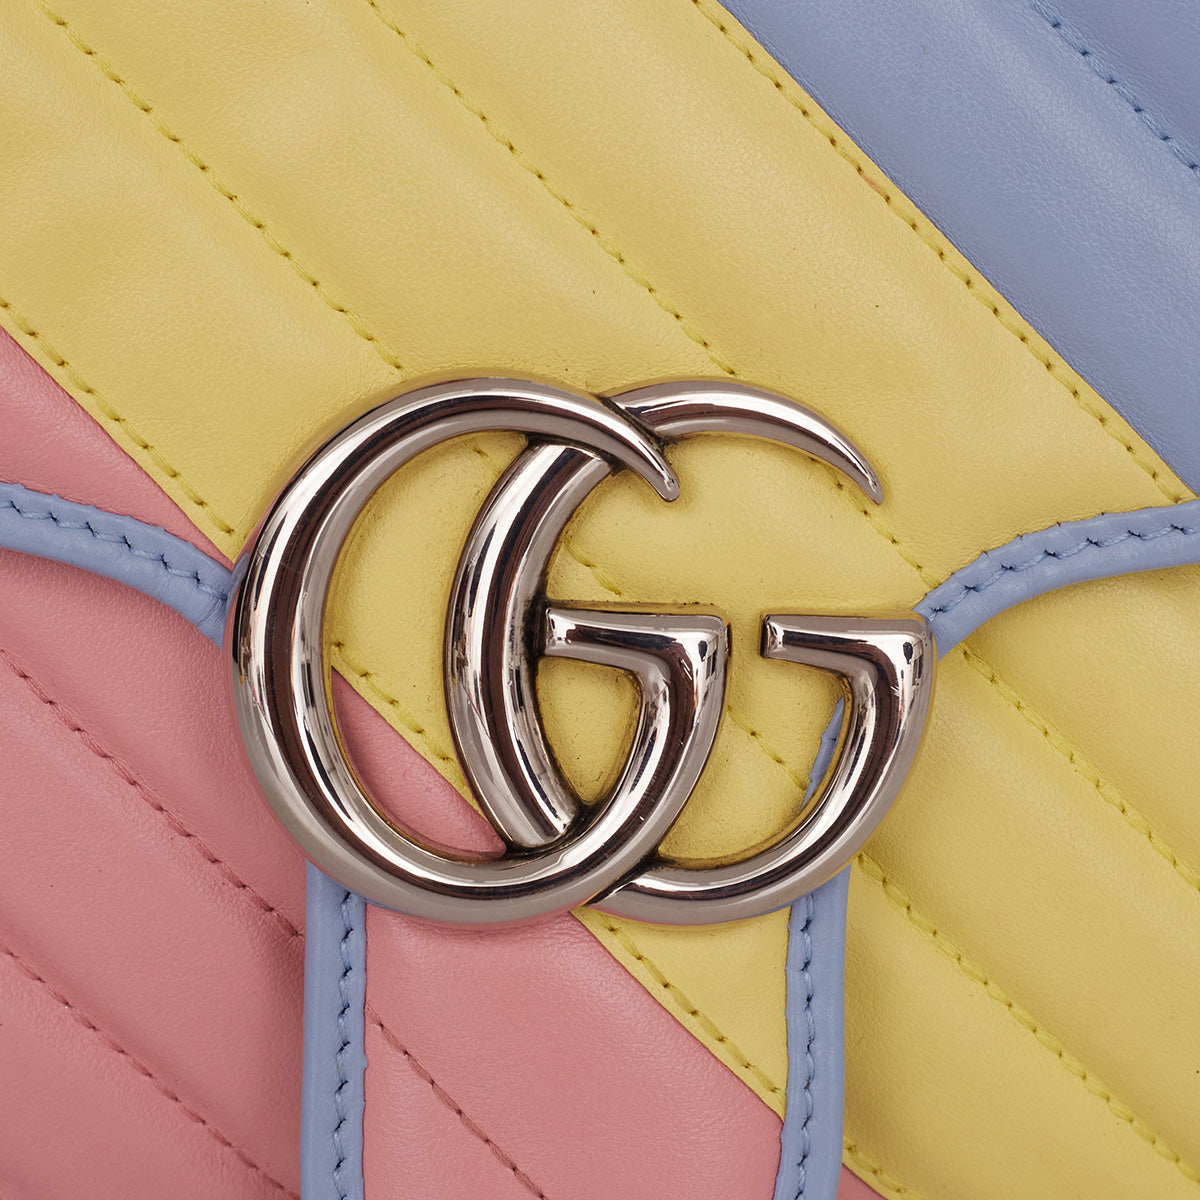 Bolsa Gucci Marmont Colorida